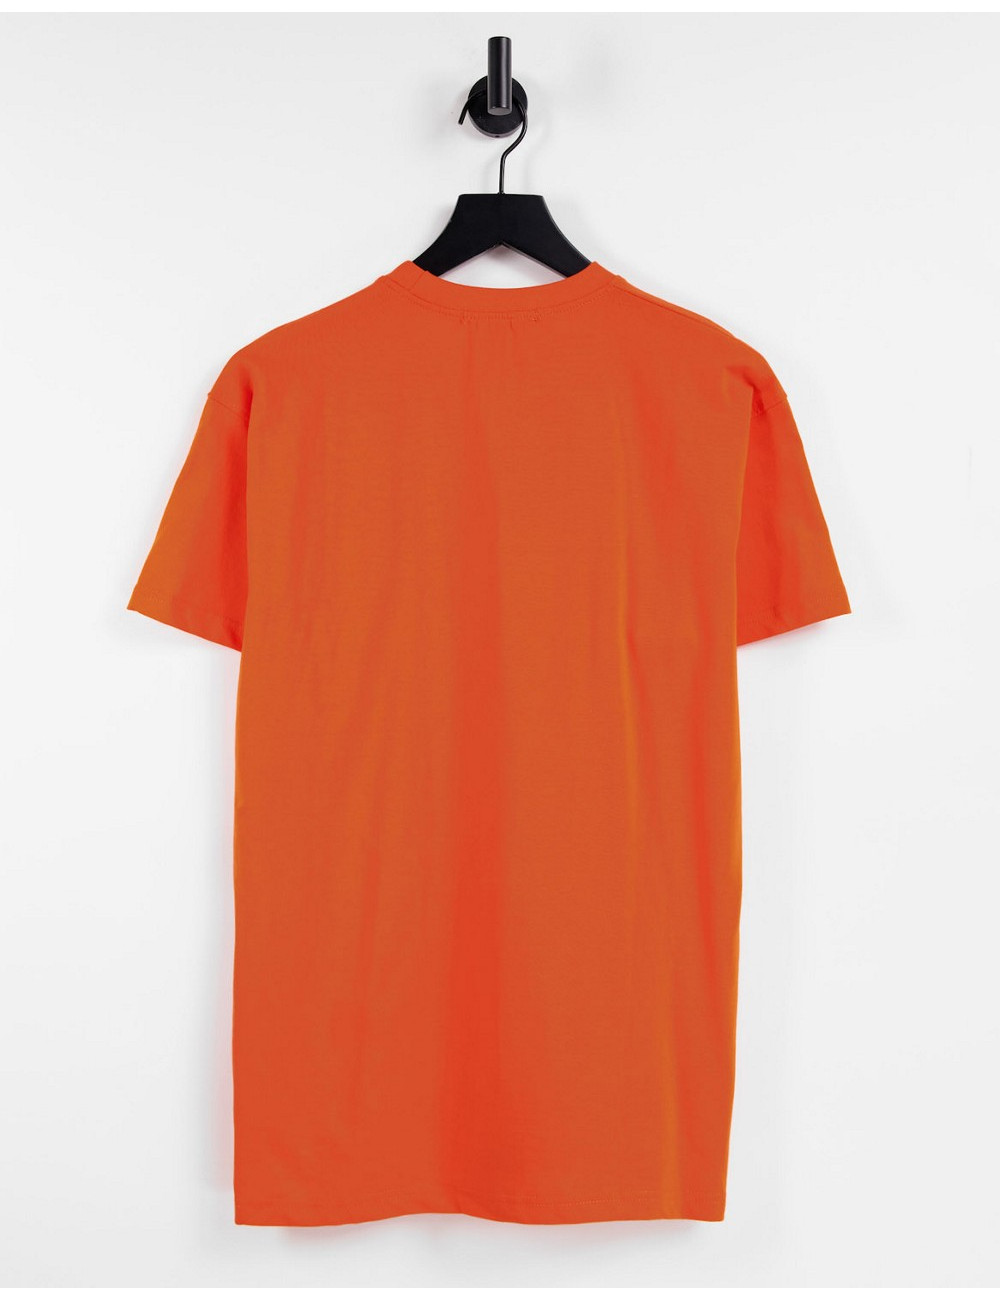 Mennace t-shirt in orange...